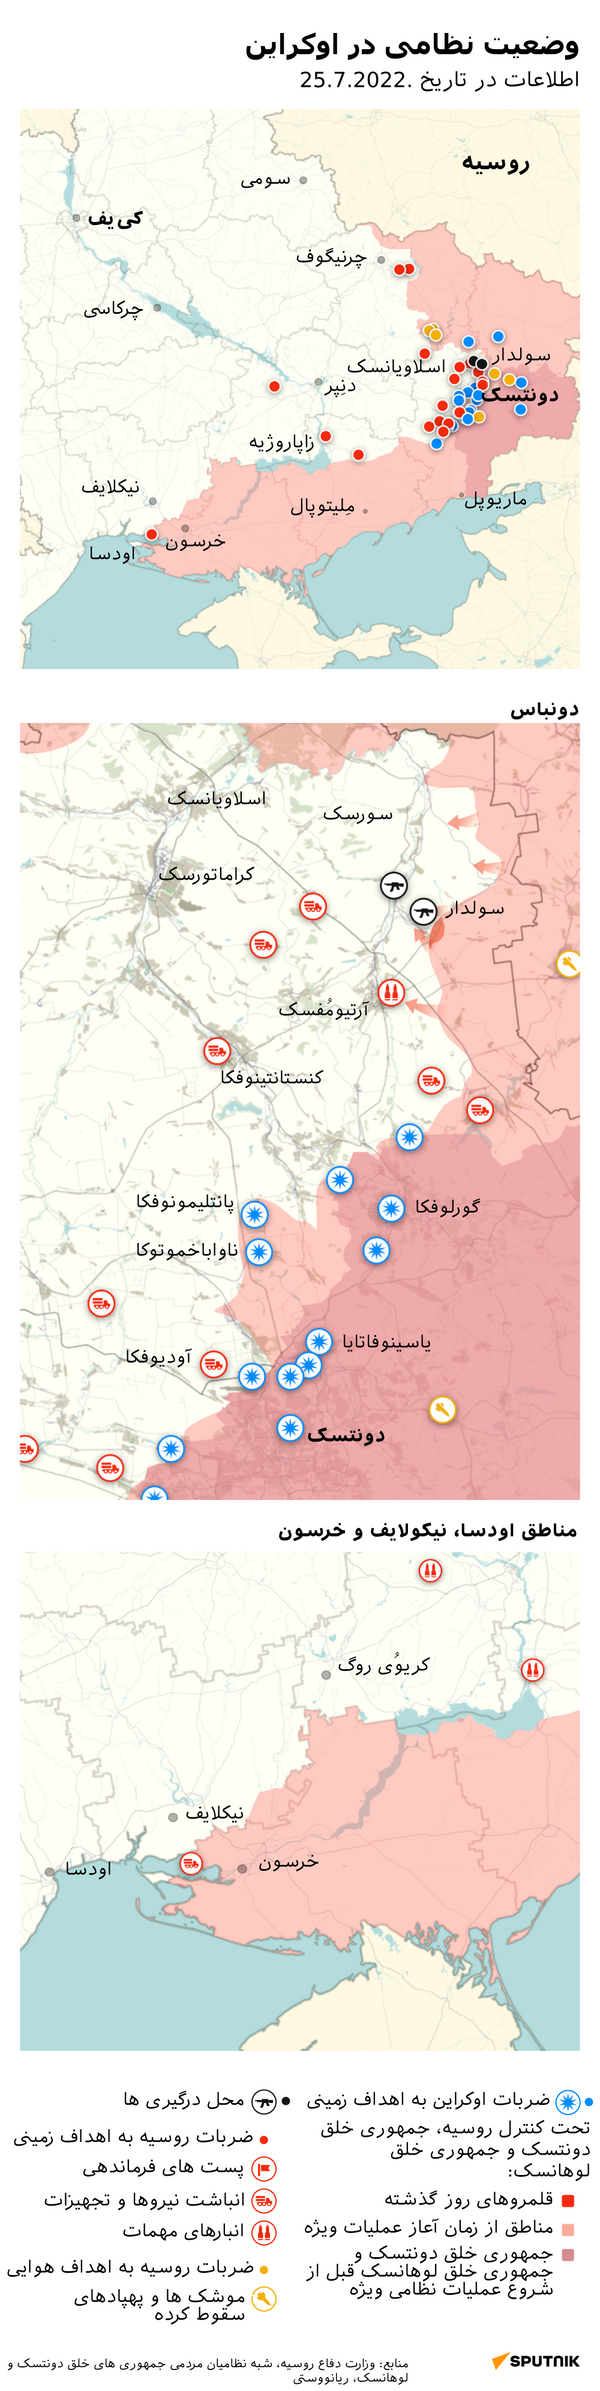 وضعیت نظامی در اوکراین - اسپوتنیک افغانستان  